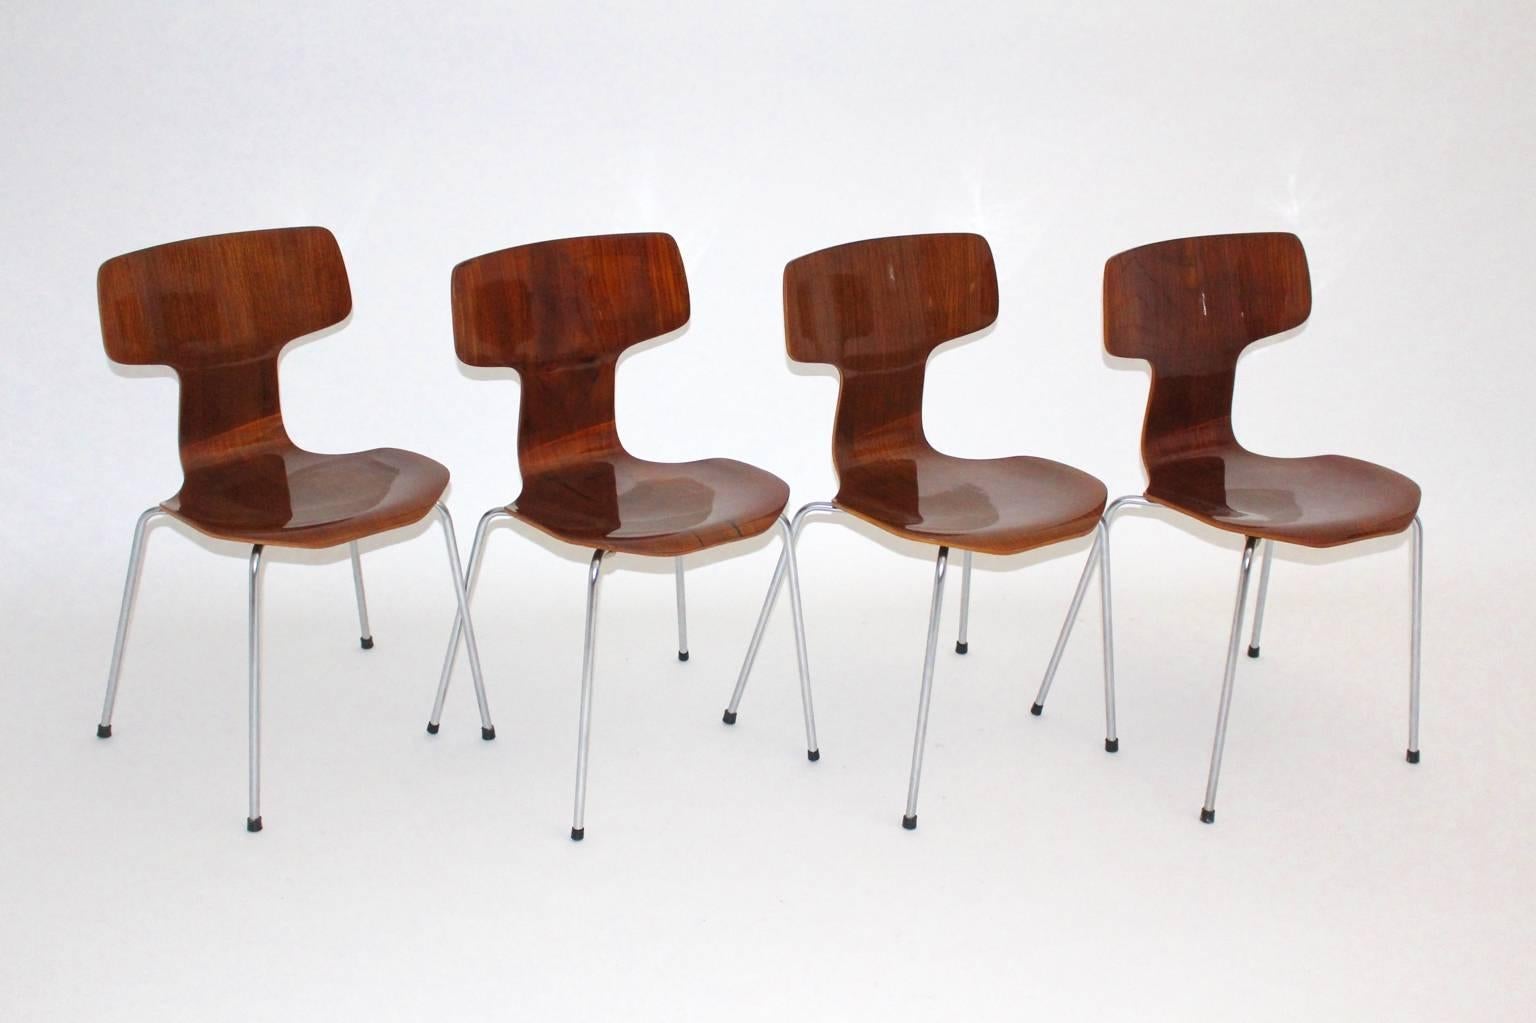 Mid Century Modern quatre contreplaqué teck Modèle No. 3103 laminé rares chaises empilables, conçu 1952 et juste produit pour 15 ans seulement.
Nettoyé et poli à la main avec soin.
L'ensemble emblématique de 4 chaises de salle à manger ou chaises